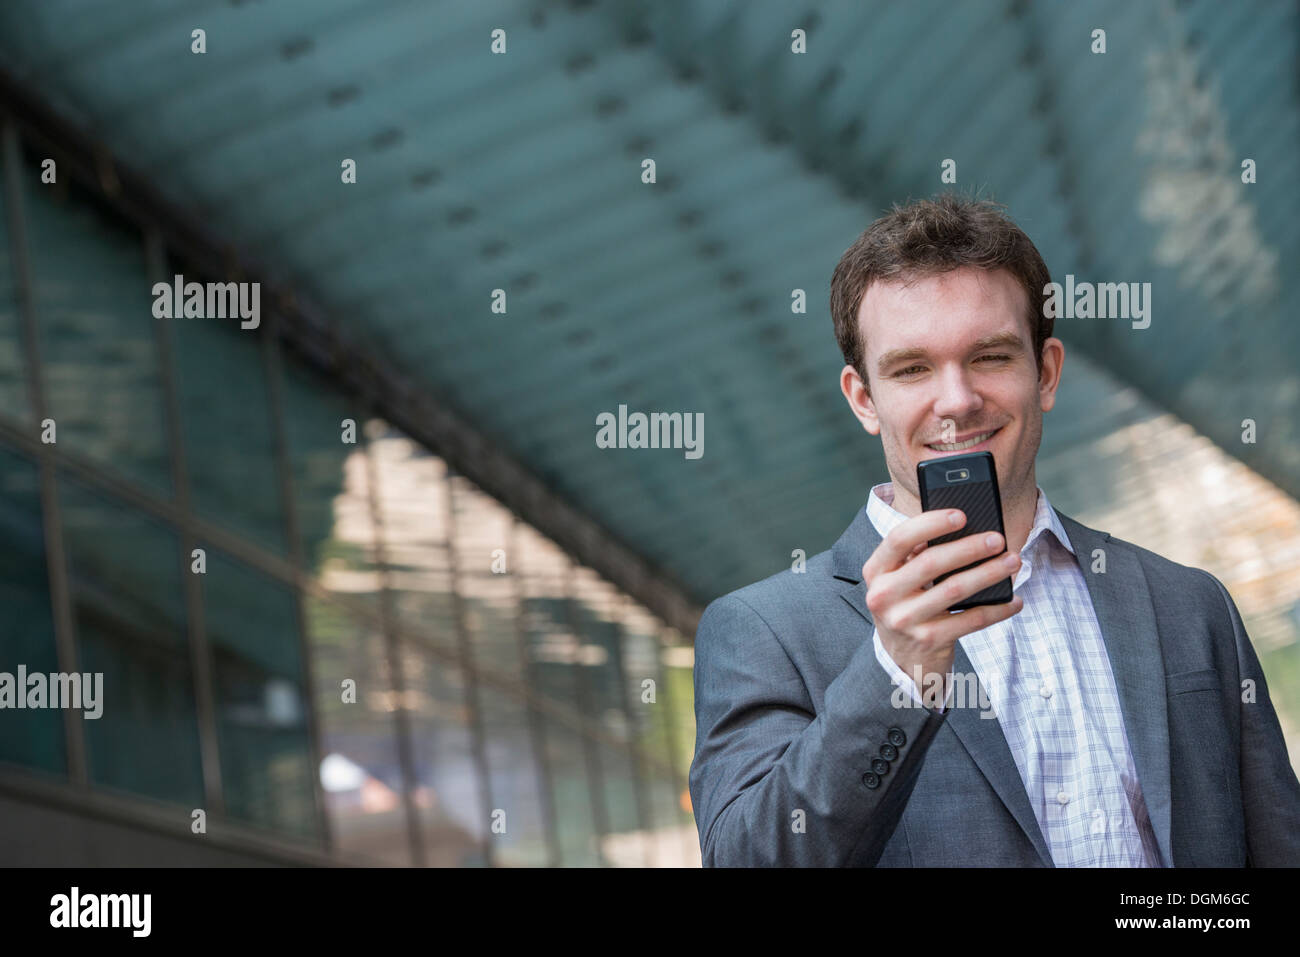 En el verano. Un hombre joven en un traje gris y corbata azul. Utilizando un teléfono inteligente. Foto de stock